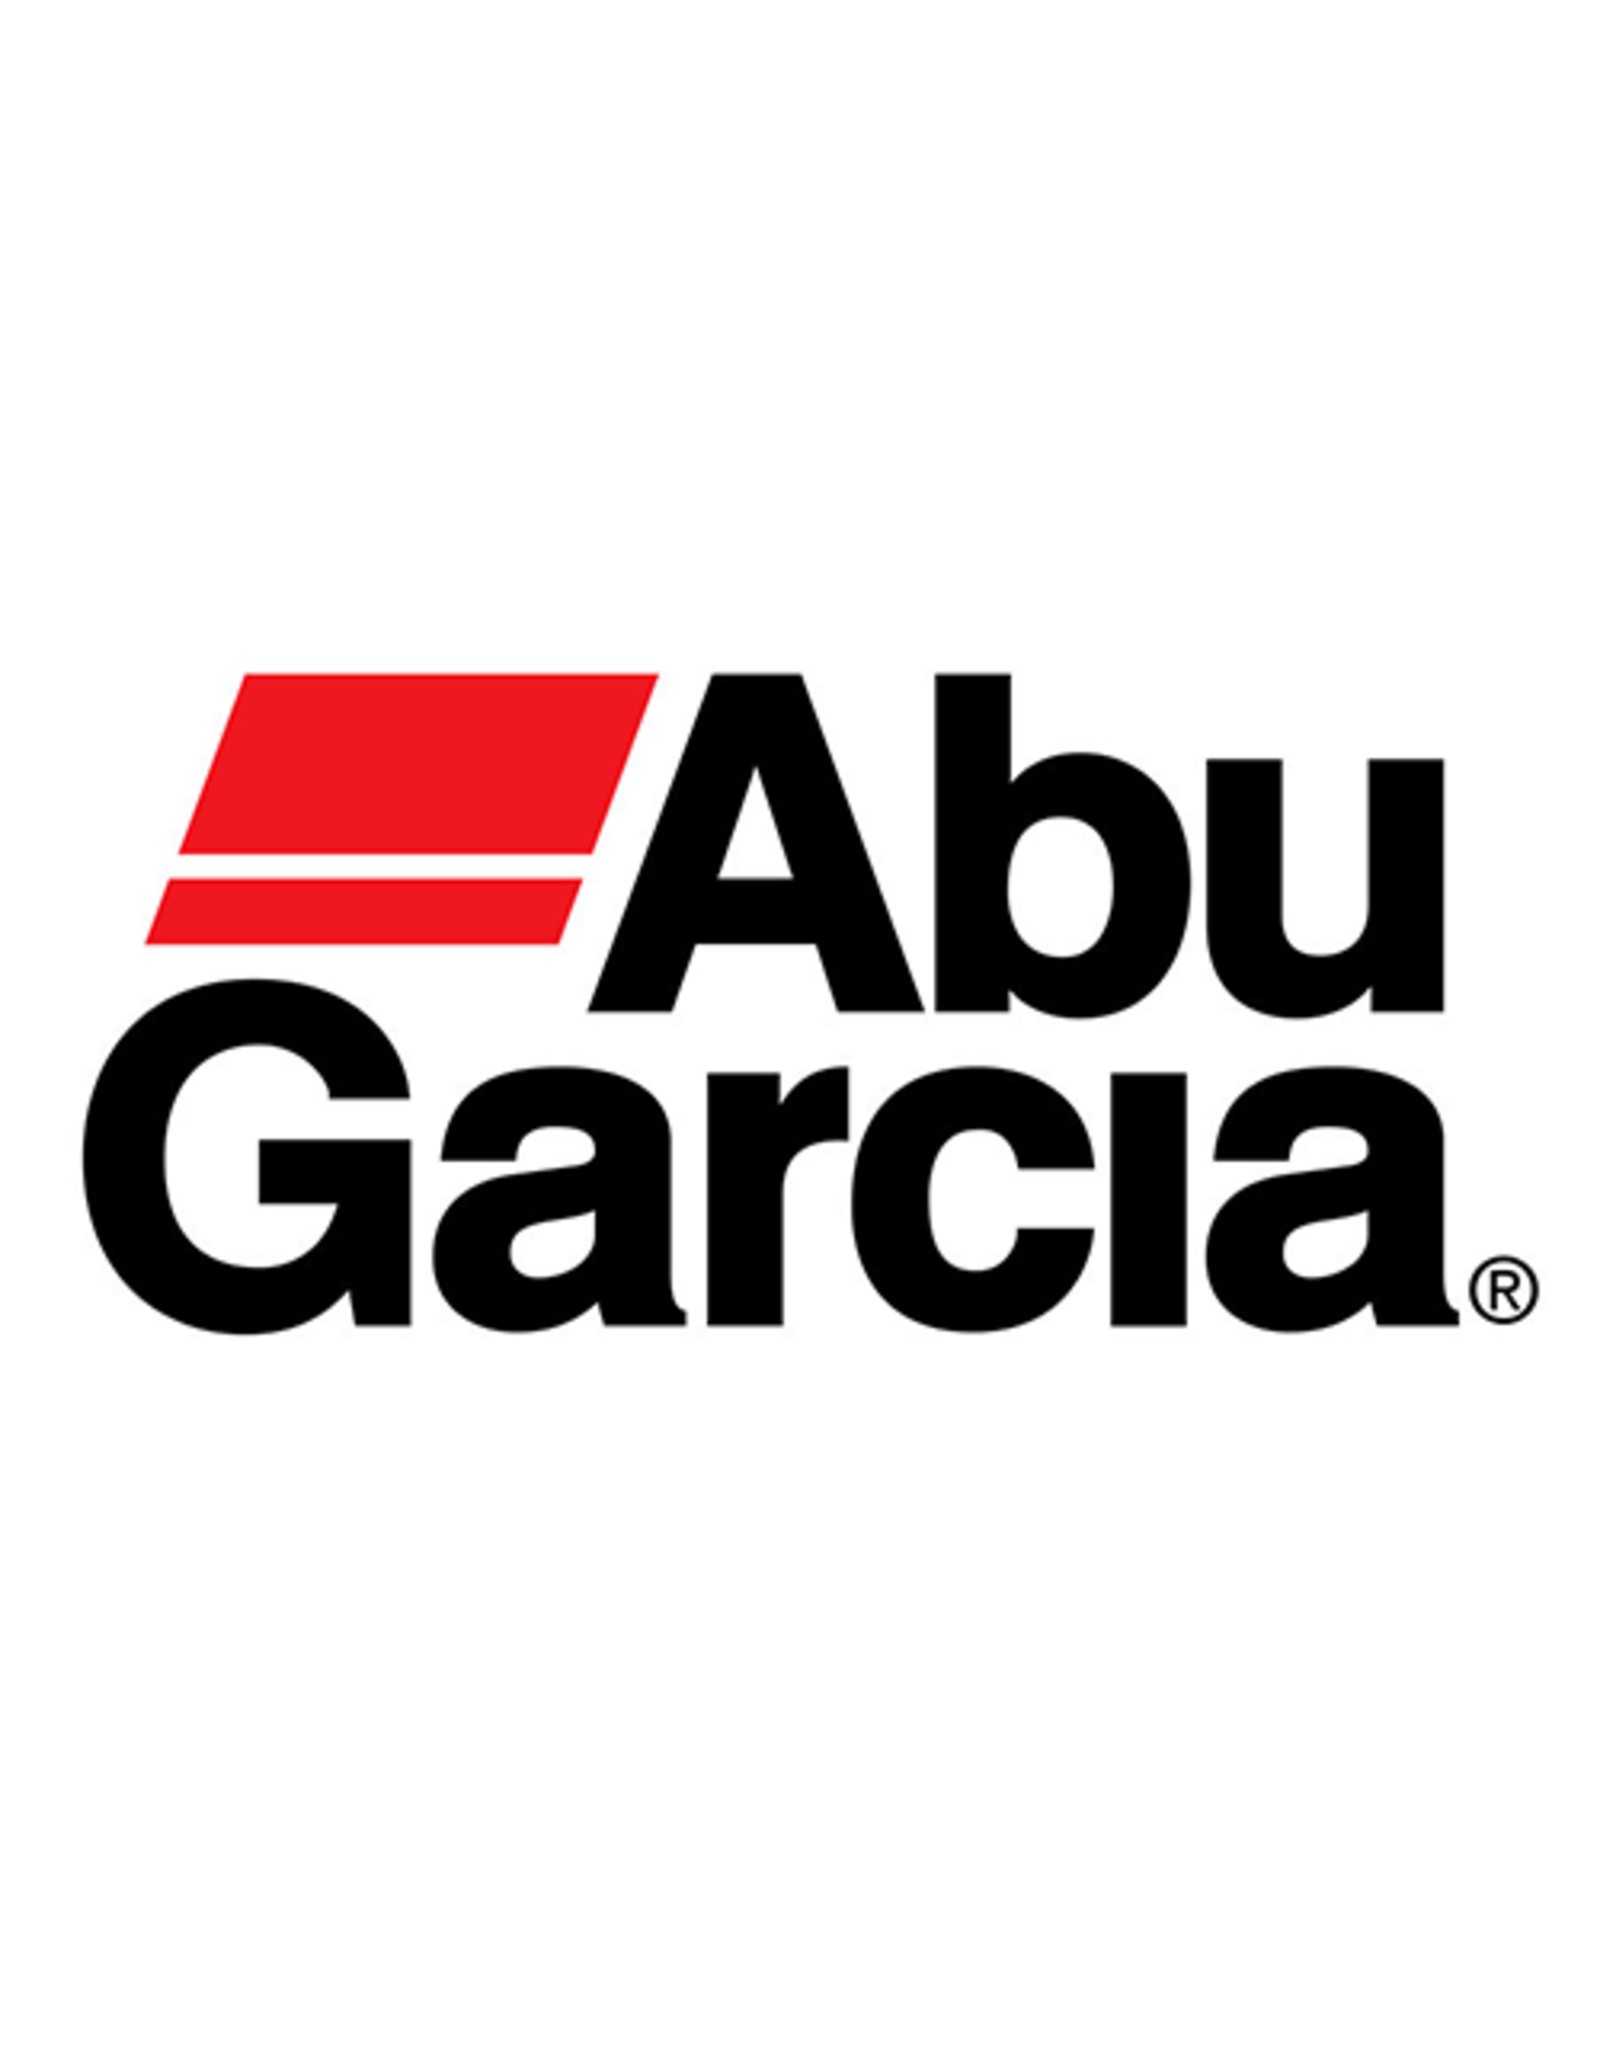 Abu Garcia 22664  DRAG WASHER-CARBON